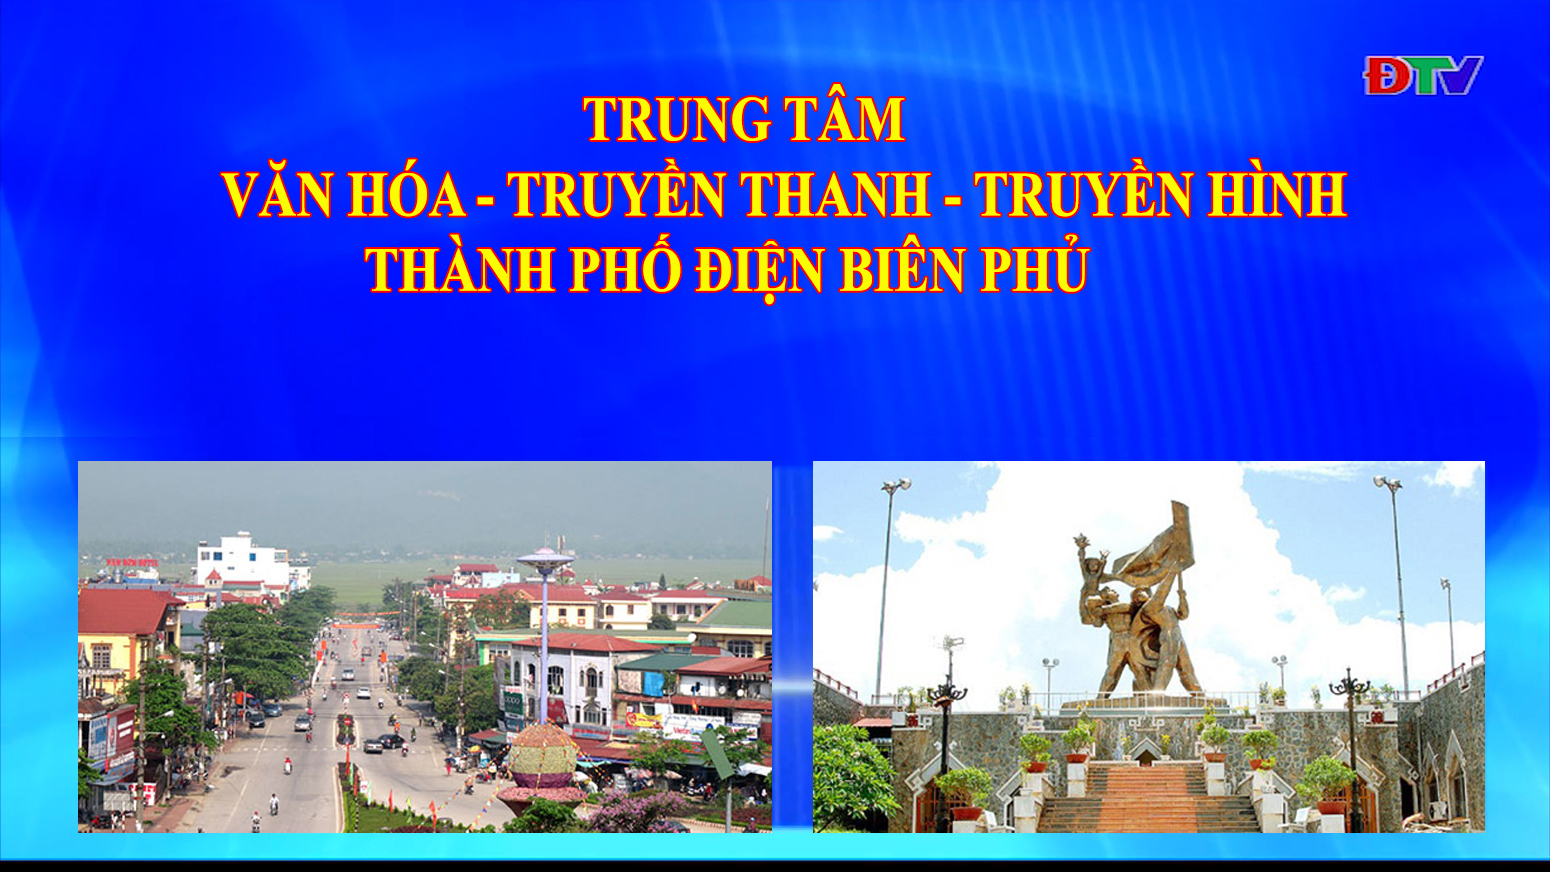 Trung tâm VH-TTTH thành phố Điện Biên Phủ (Ngày 21-12-2021)